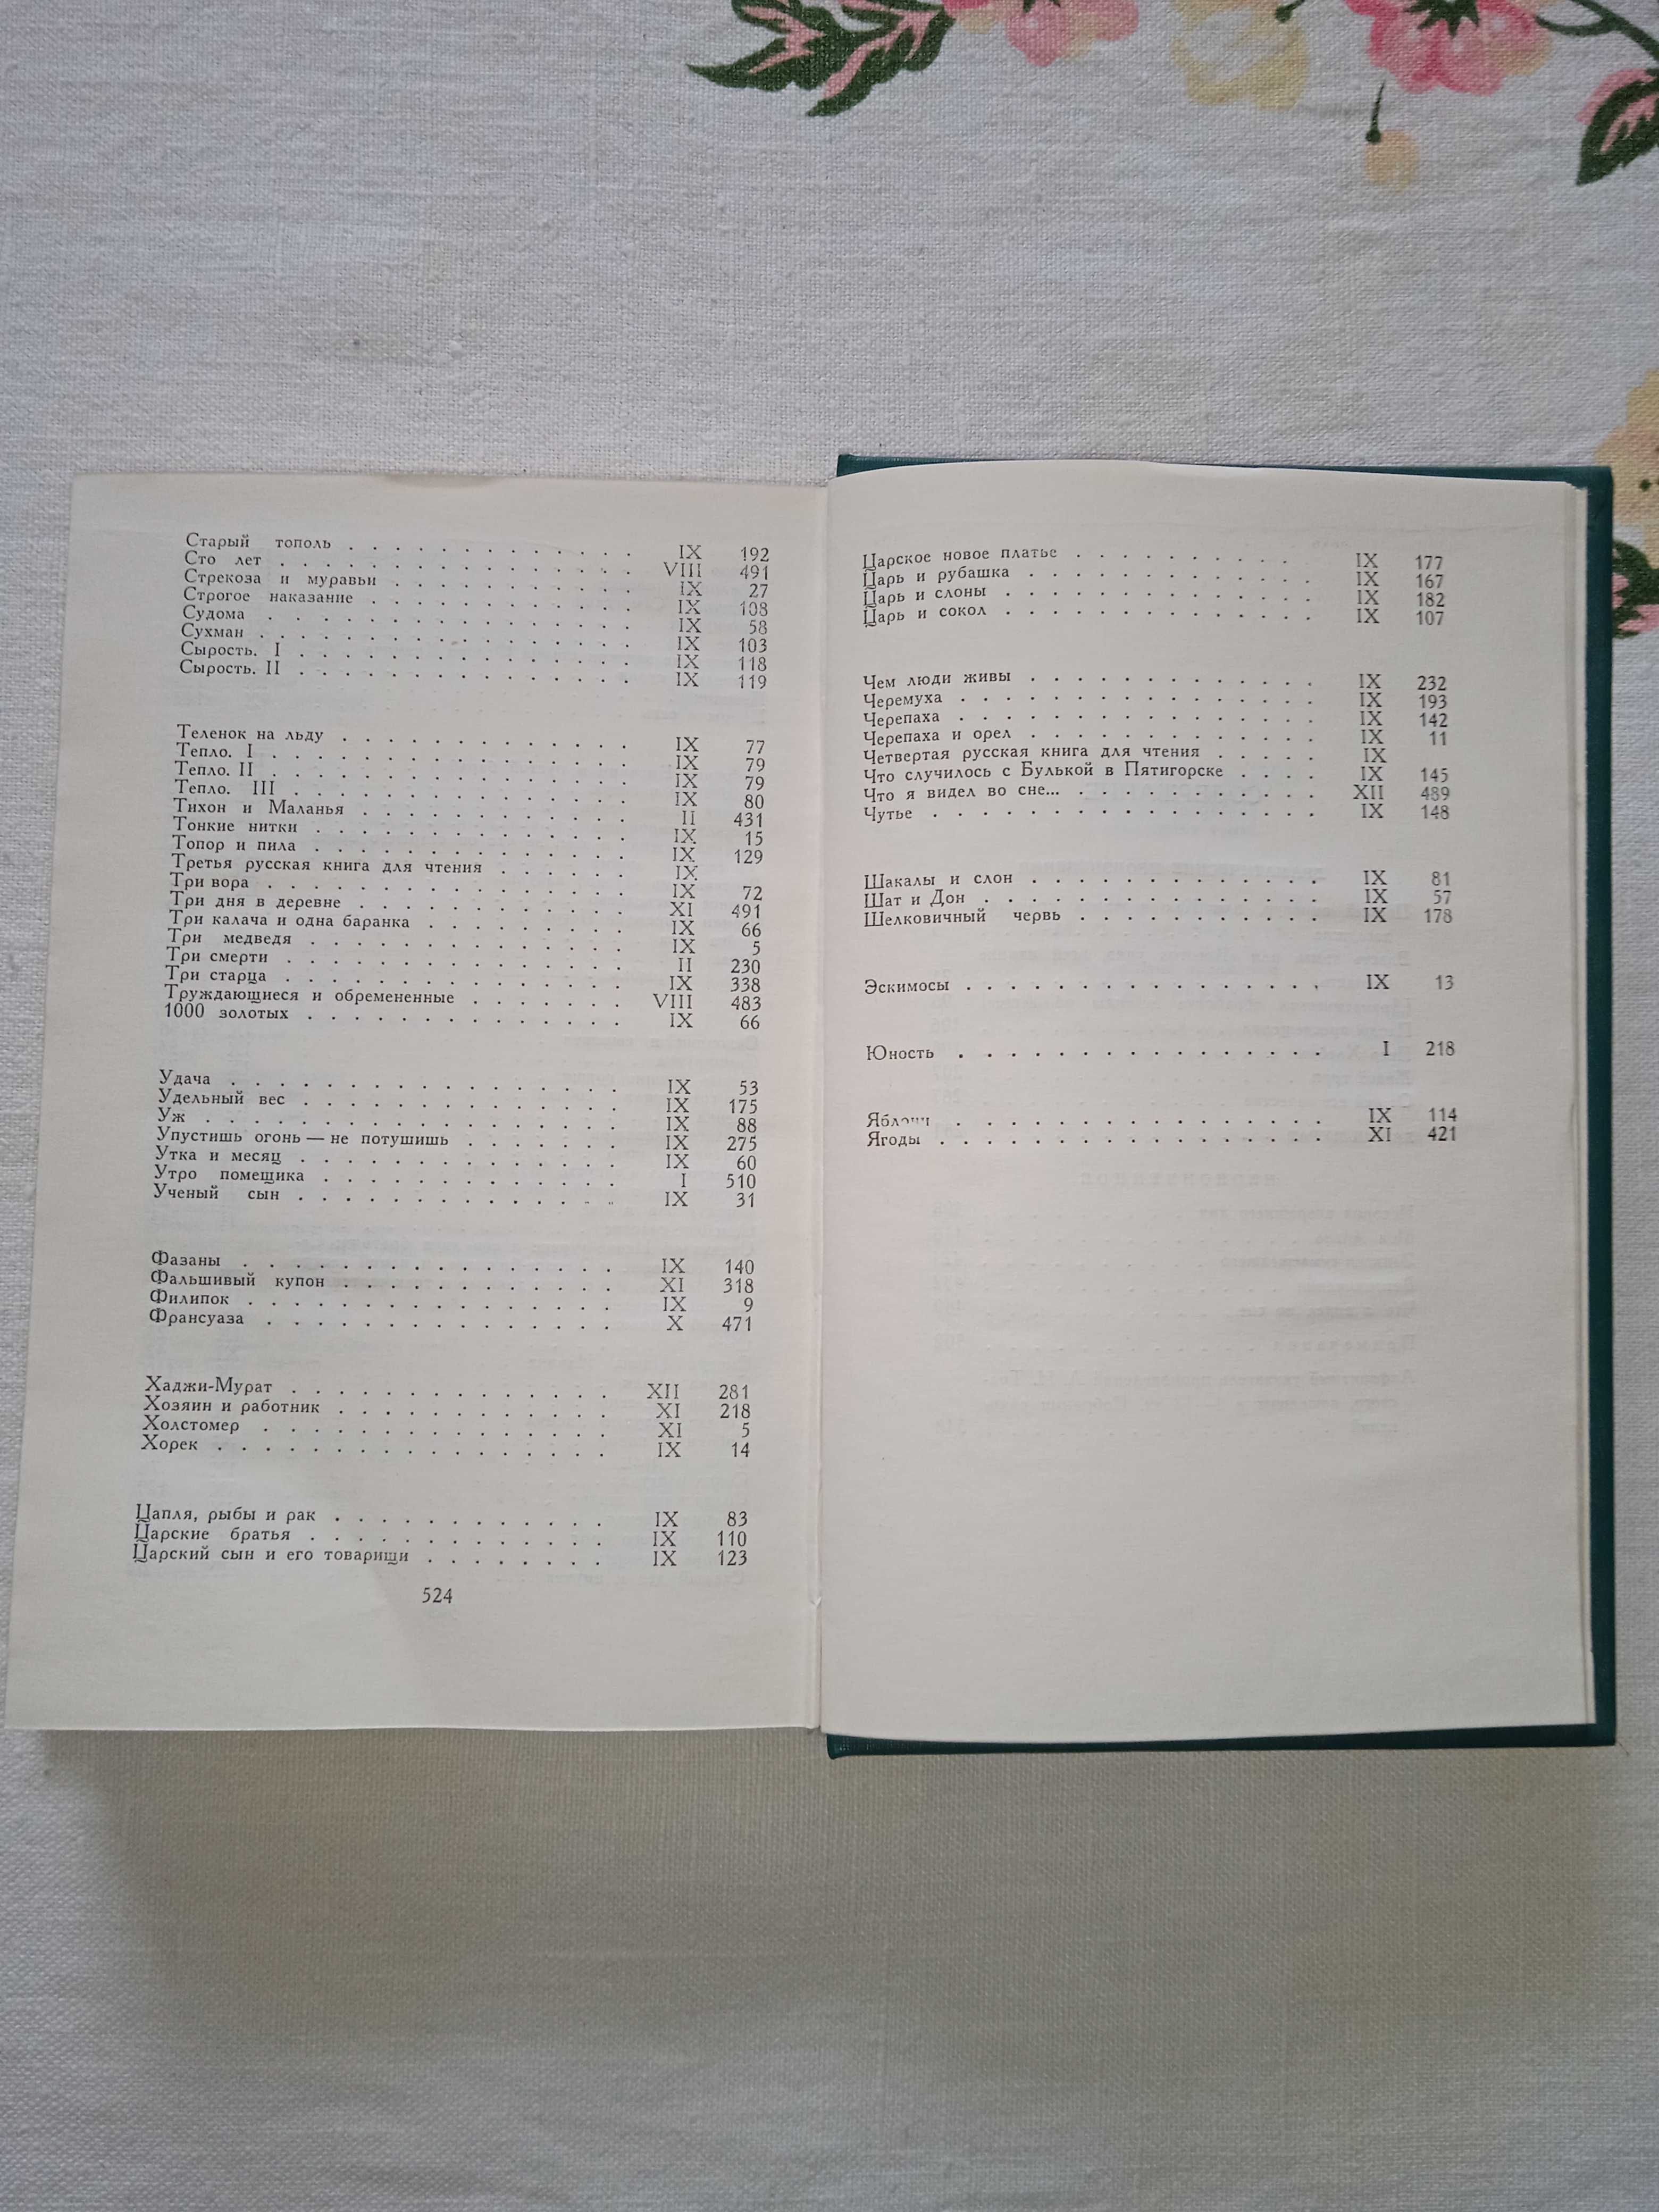 Толстой Л.Н. "Збірка творів у 12 томах". Видавництво 1987 року.